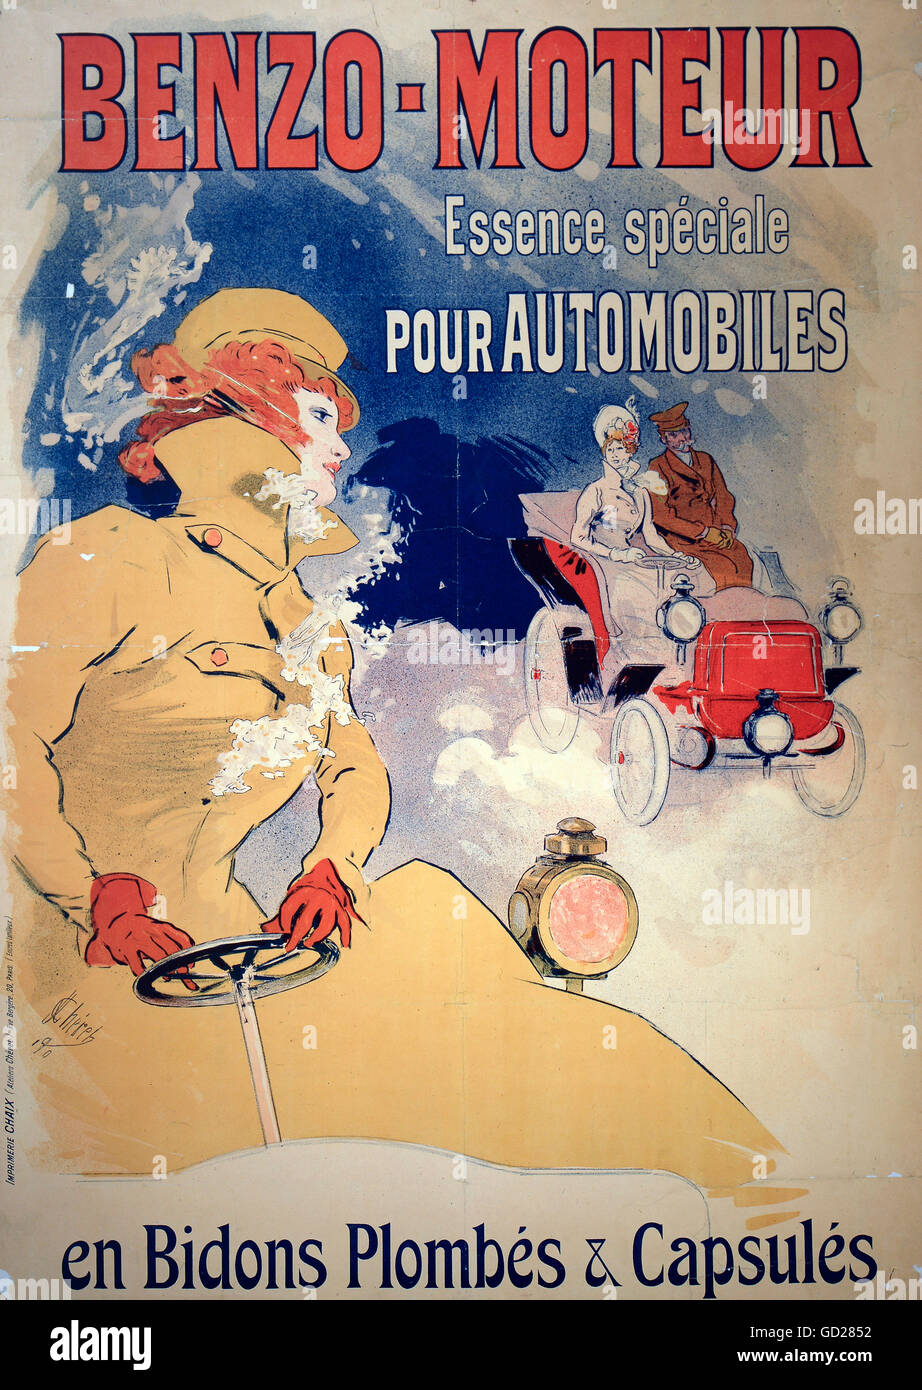 Affiches, affiche publicitaire le combustible 'Benzo Moteur', lithographie couleur, par Jules Cheret (1836 - 1932), Paris, 1890 123 x 86 cm, Neue Sammlung (la Nouvelle Collection), Munich, droits additionnels-Clearences-non disponible Banque D'Images